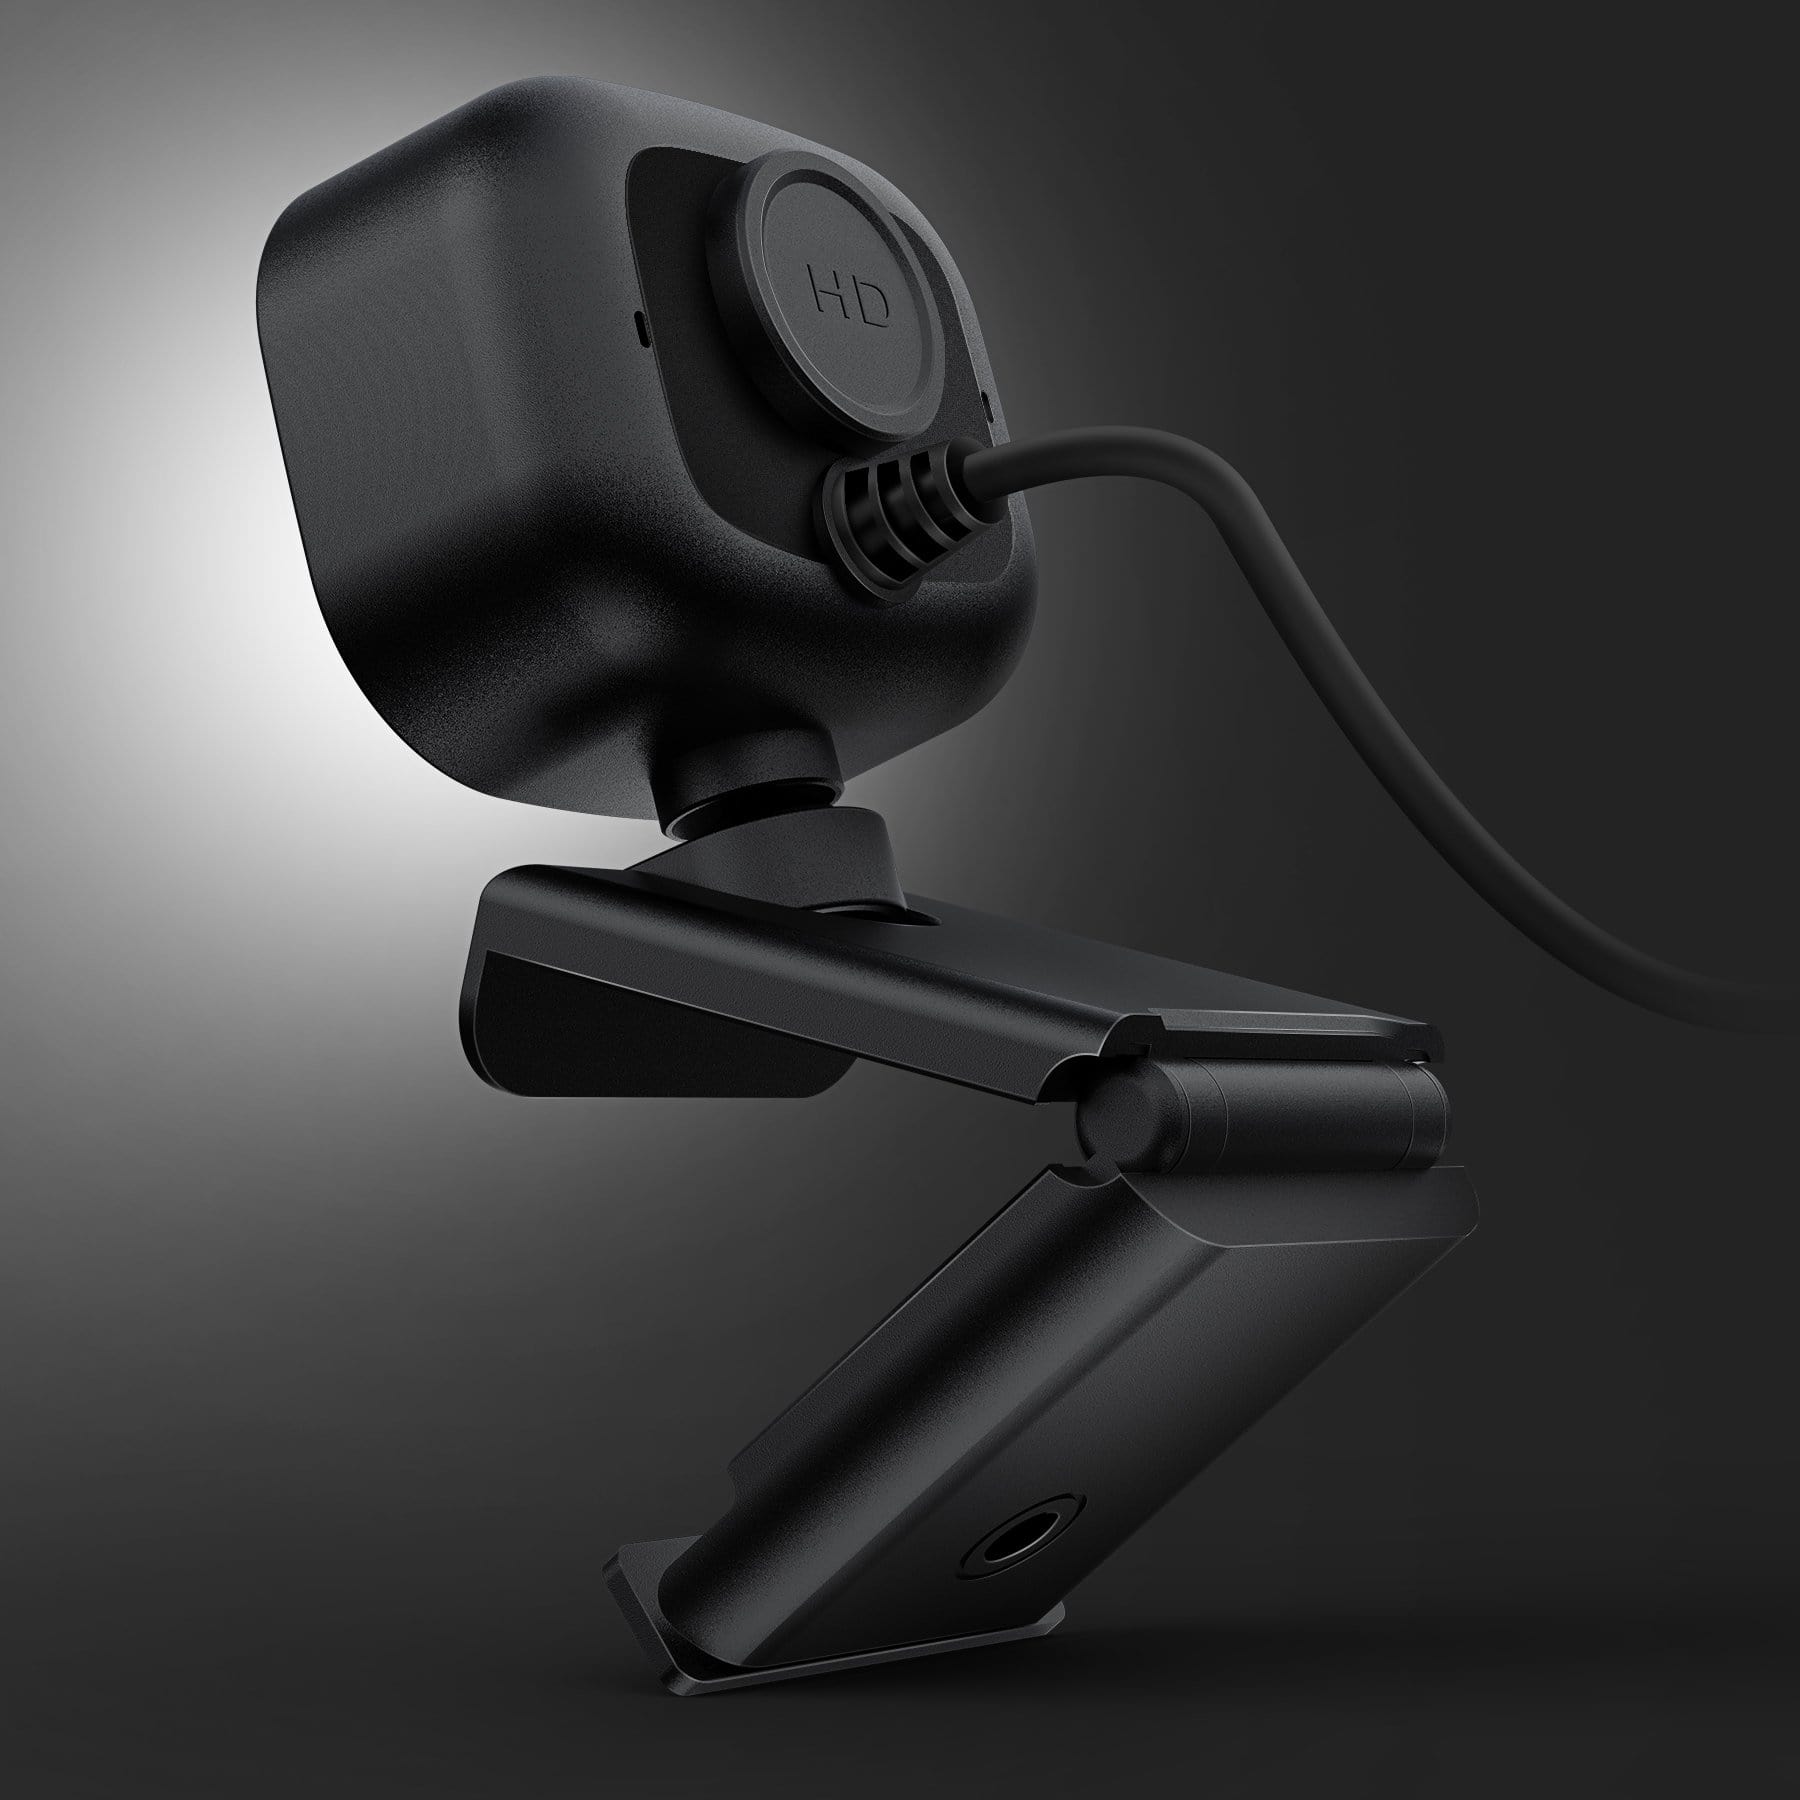 Jellycomb1080P HD Webcam Pro Auto Focus & Light Correction W06